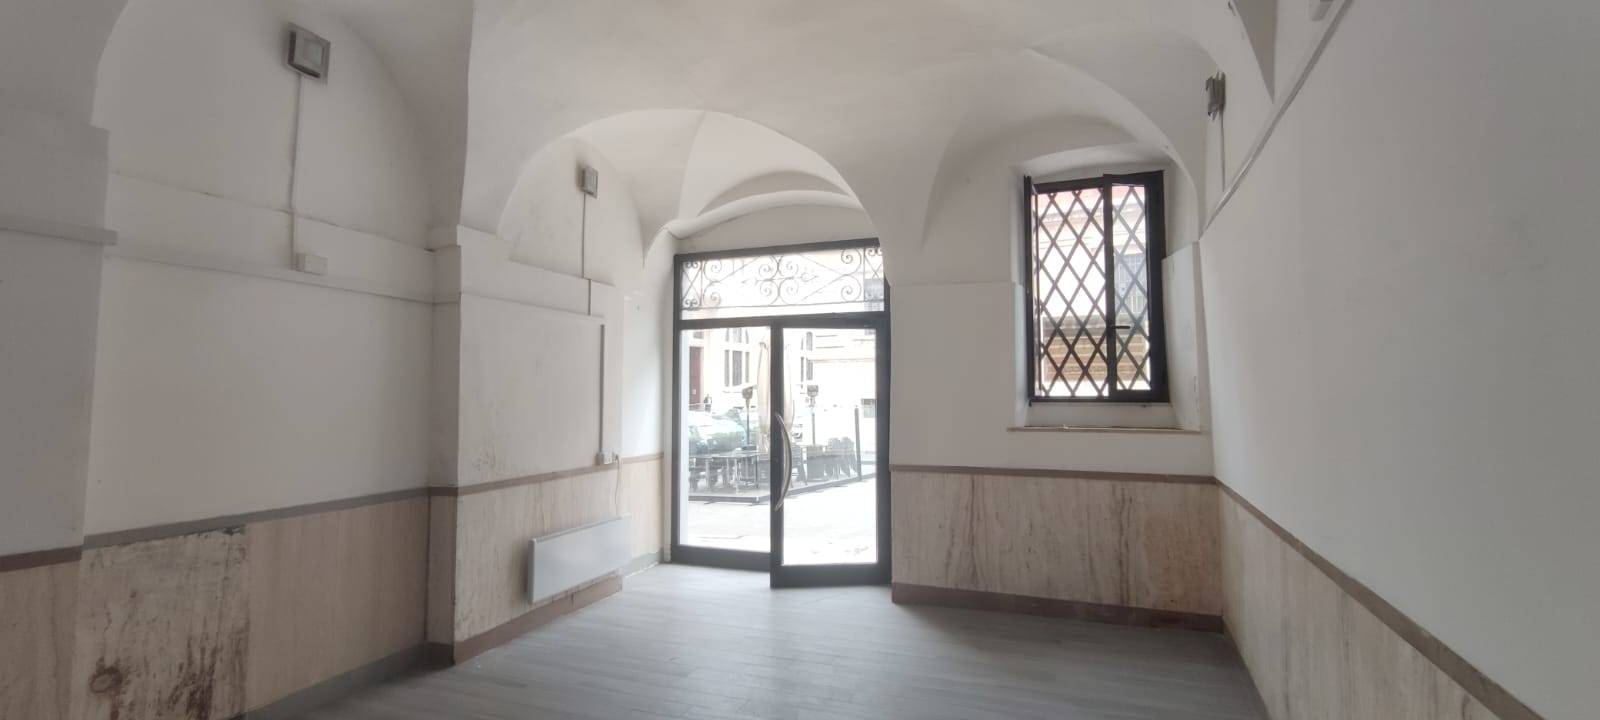 Locale commerciale in vendita, Ascoli Piceno centro storico